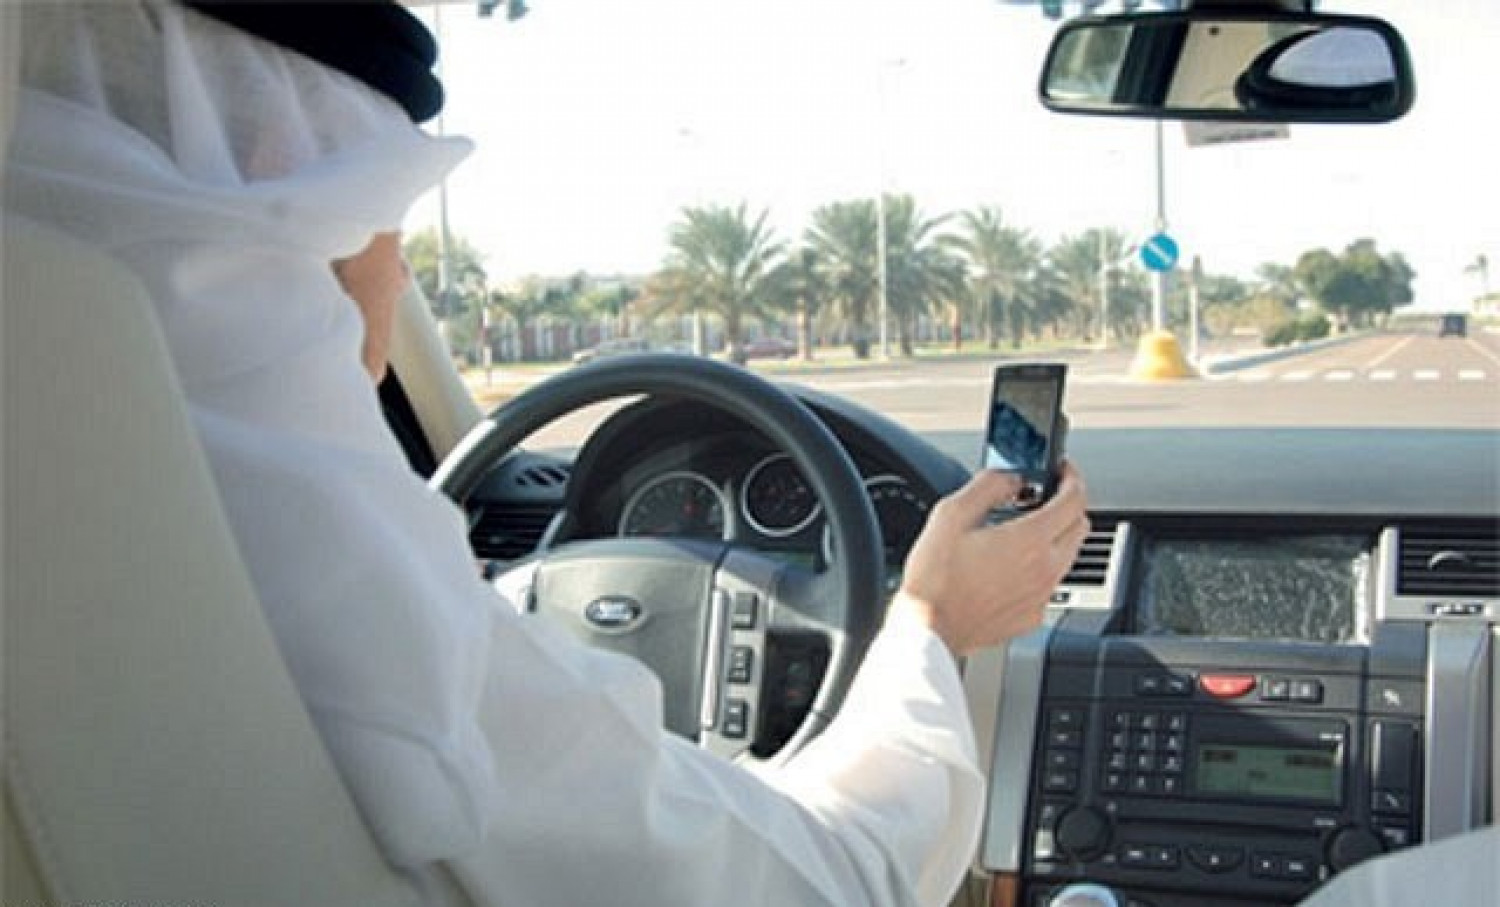 "المرور".. 5 أخطار تترتب على استخدام الهاتف المحمول أثناء قيادة السيارات 